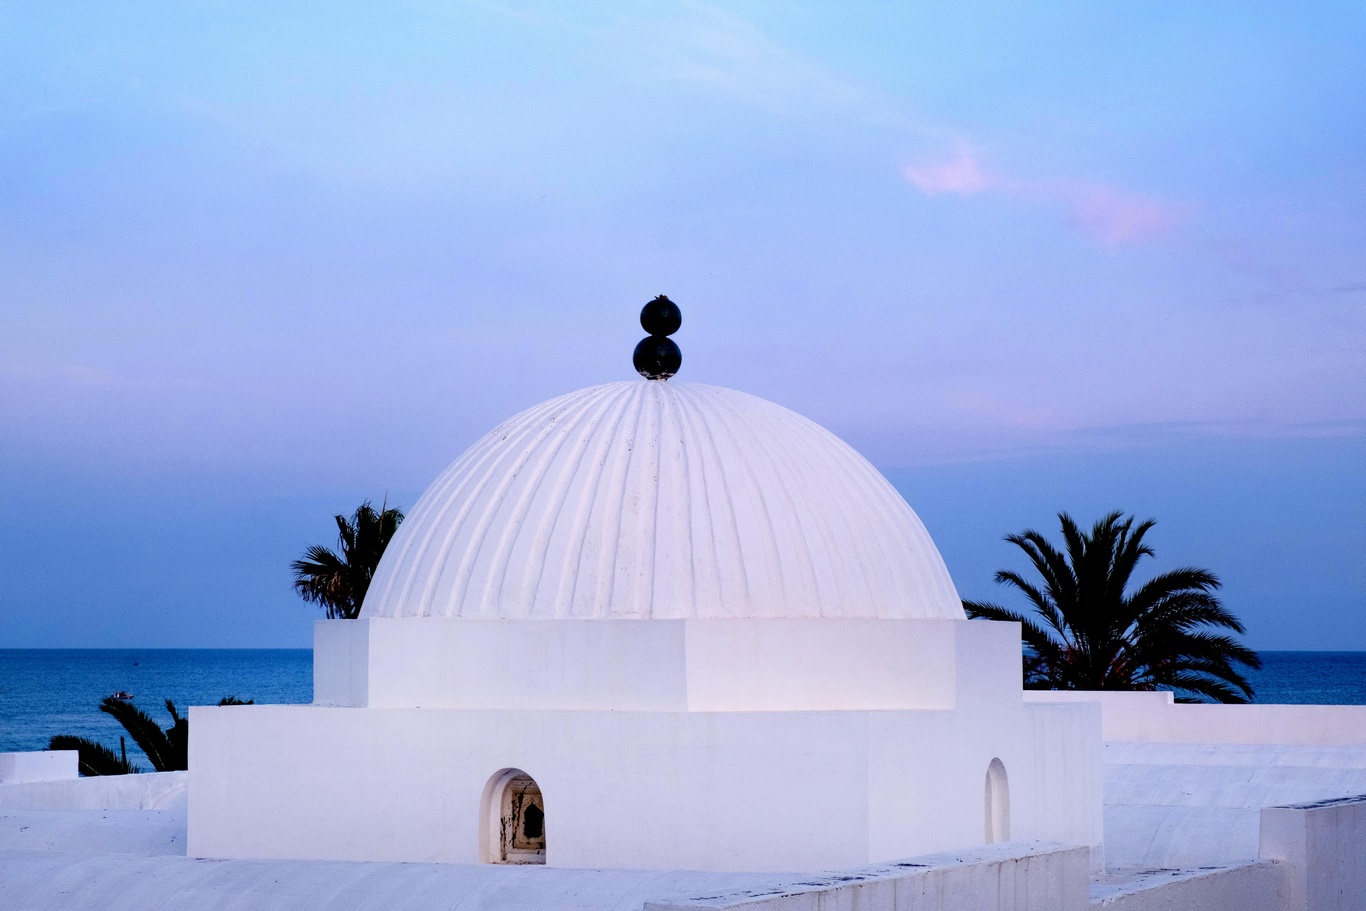 Tunisie - Hammamet - Hôtel Orangers Garden villas et Bungalows resort 5*Luxe